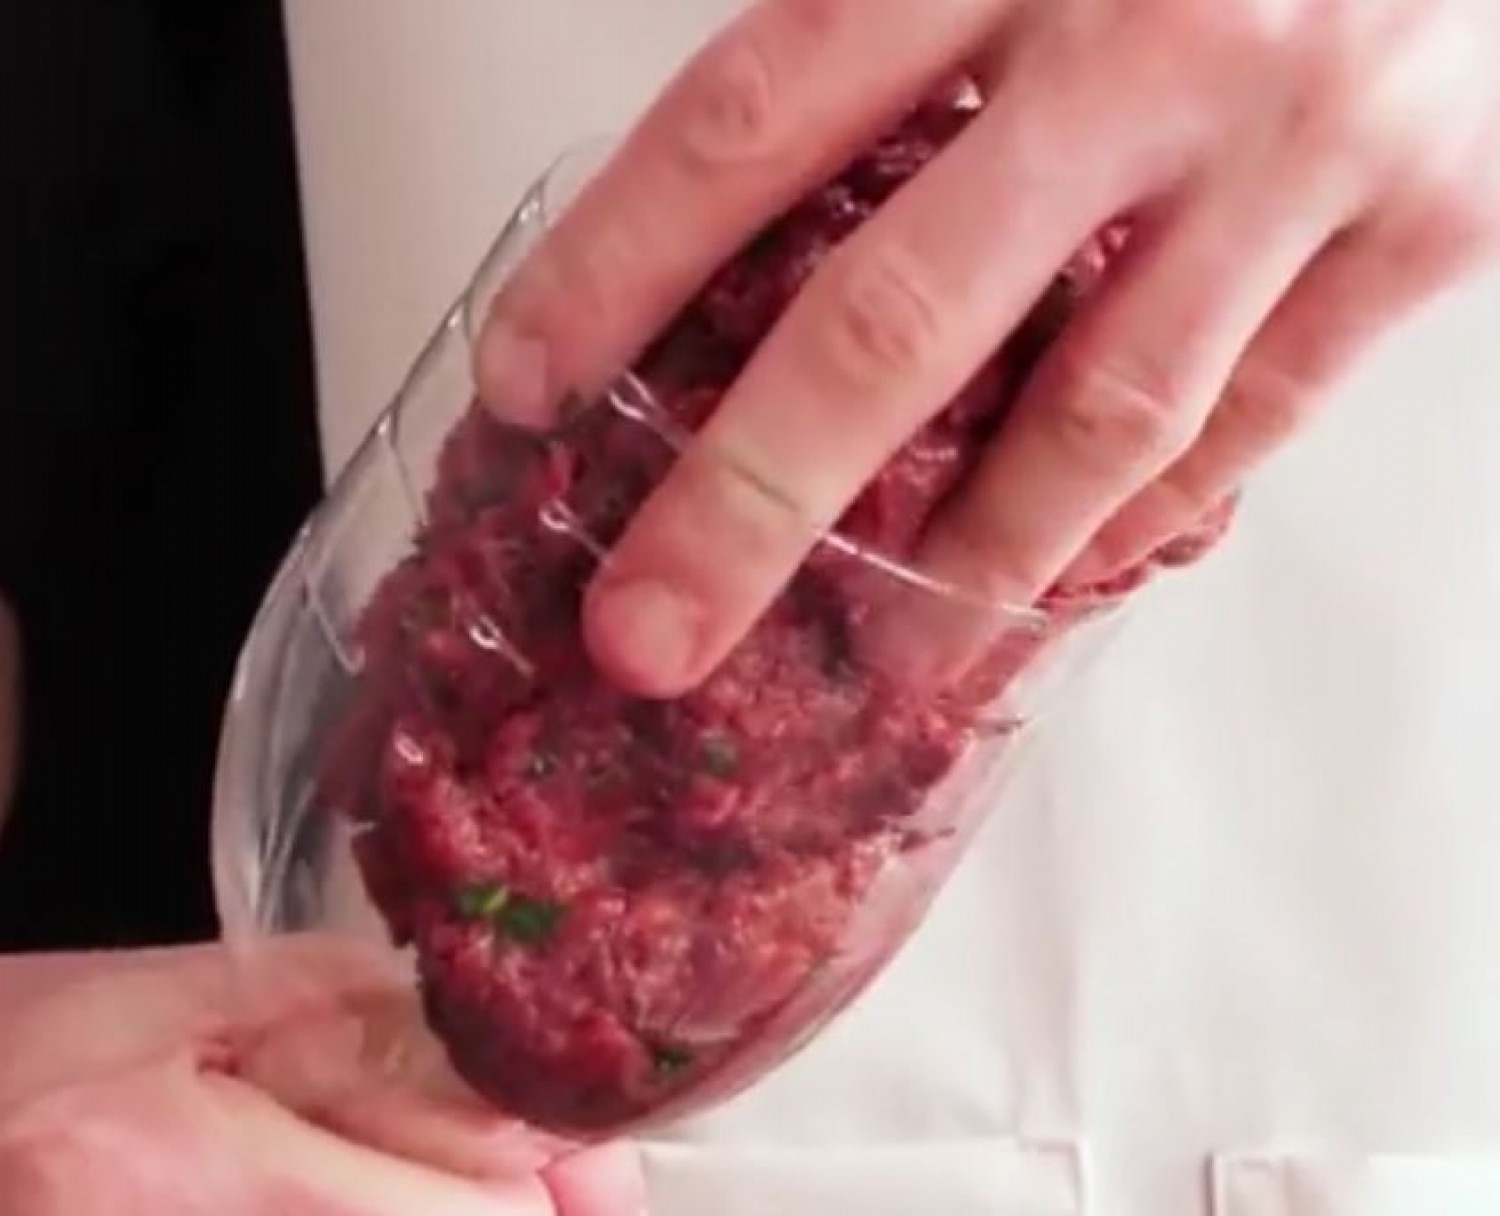 KONYHAI TRÜKK: Tegyük a darálthúsos masszát egy műanyag flakonba